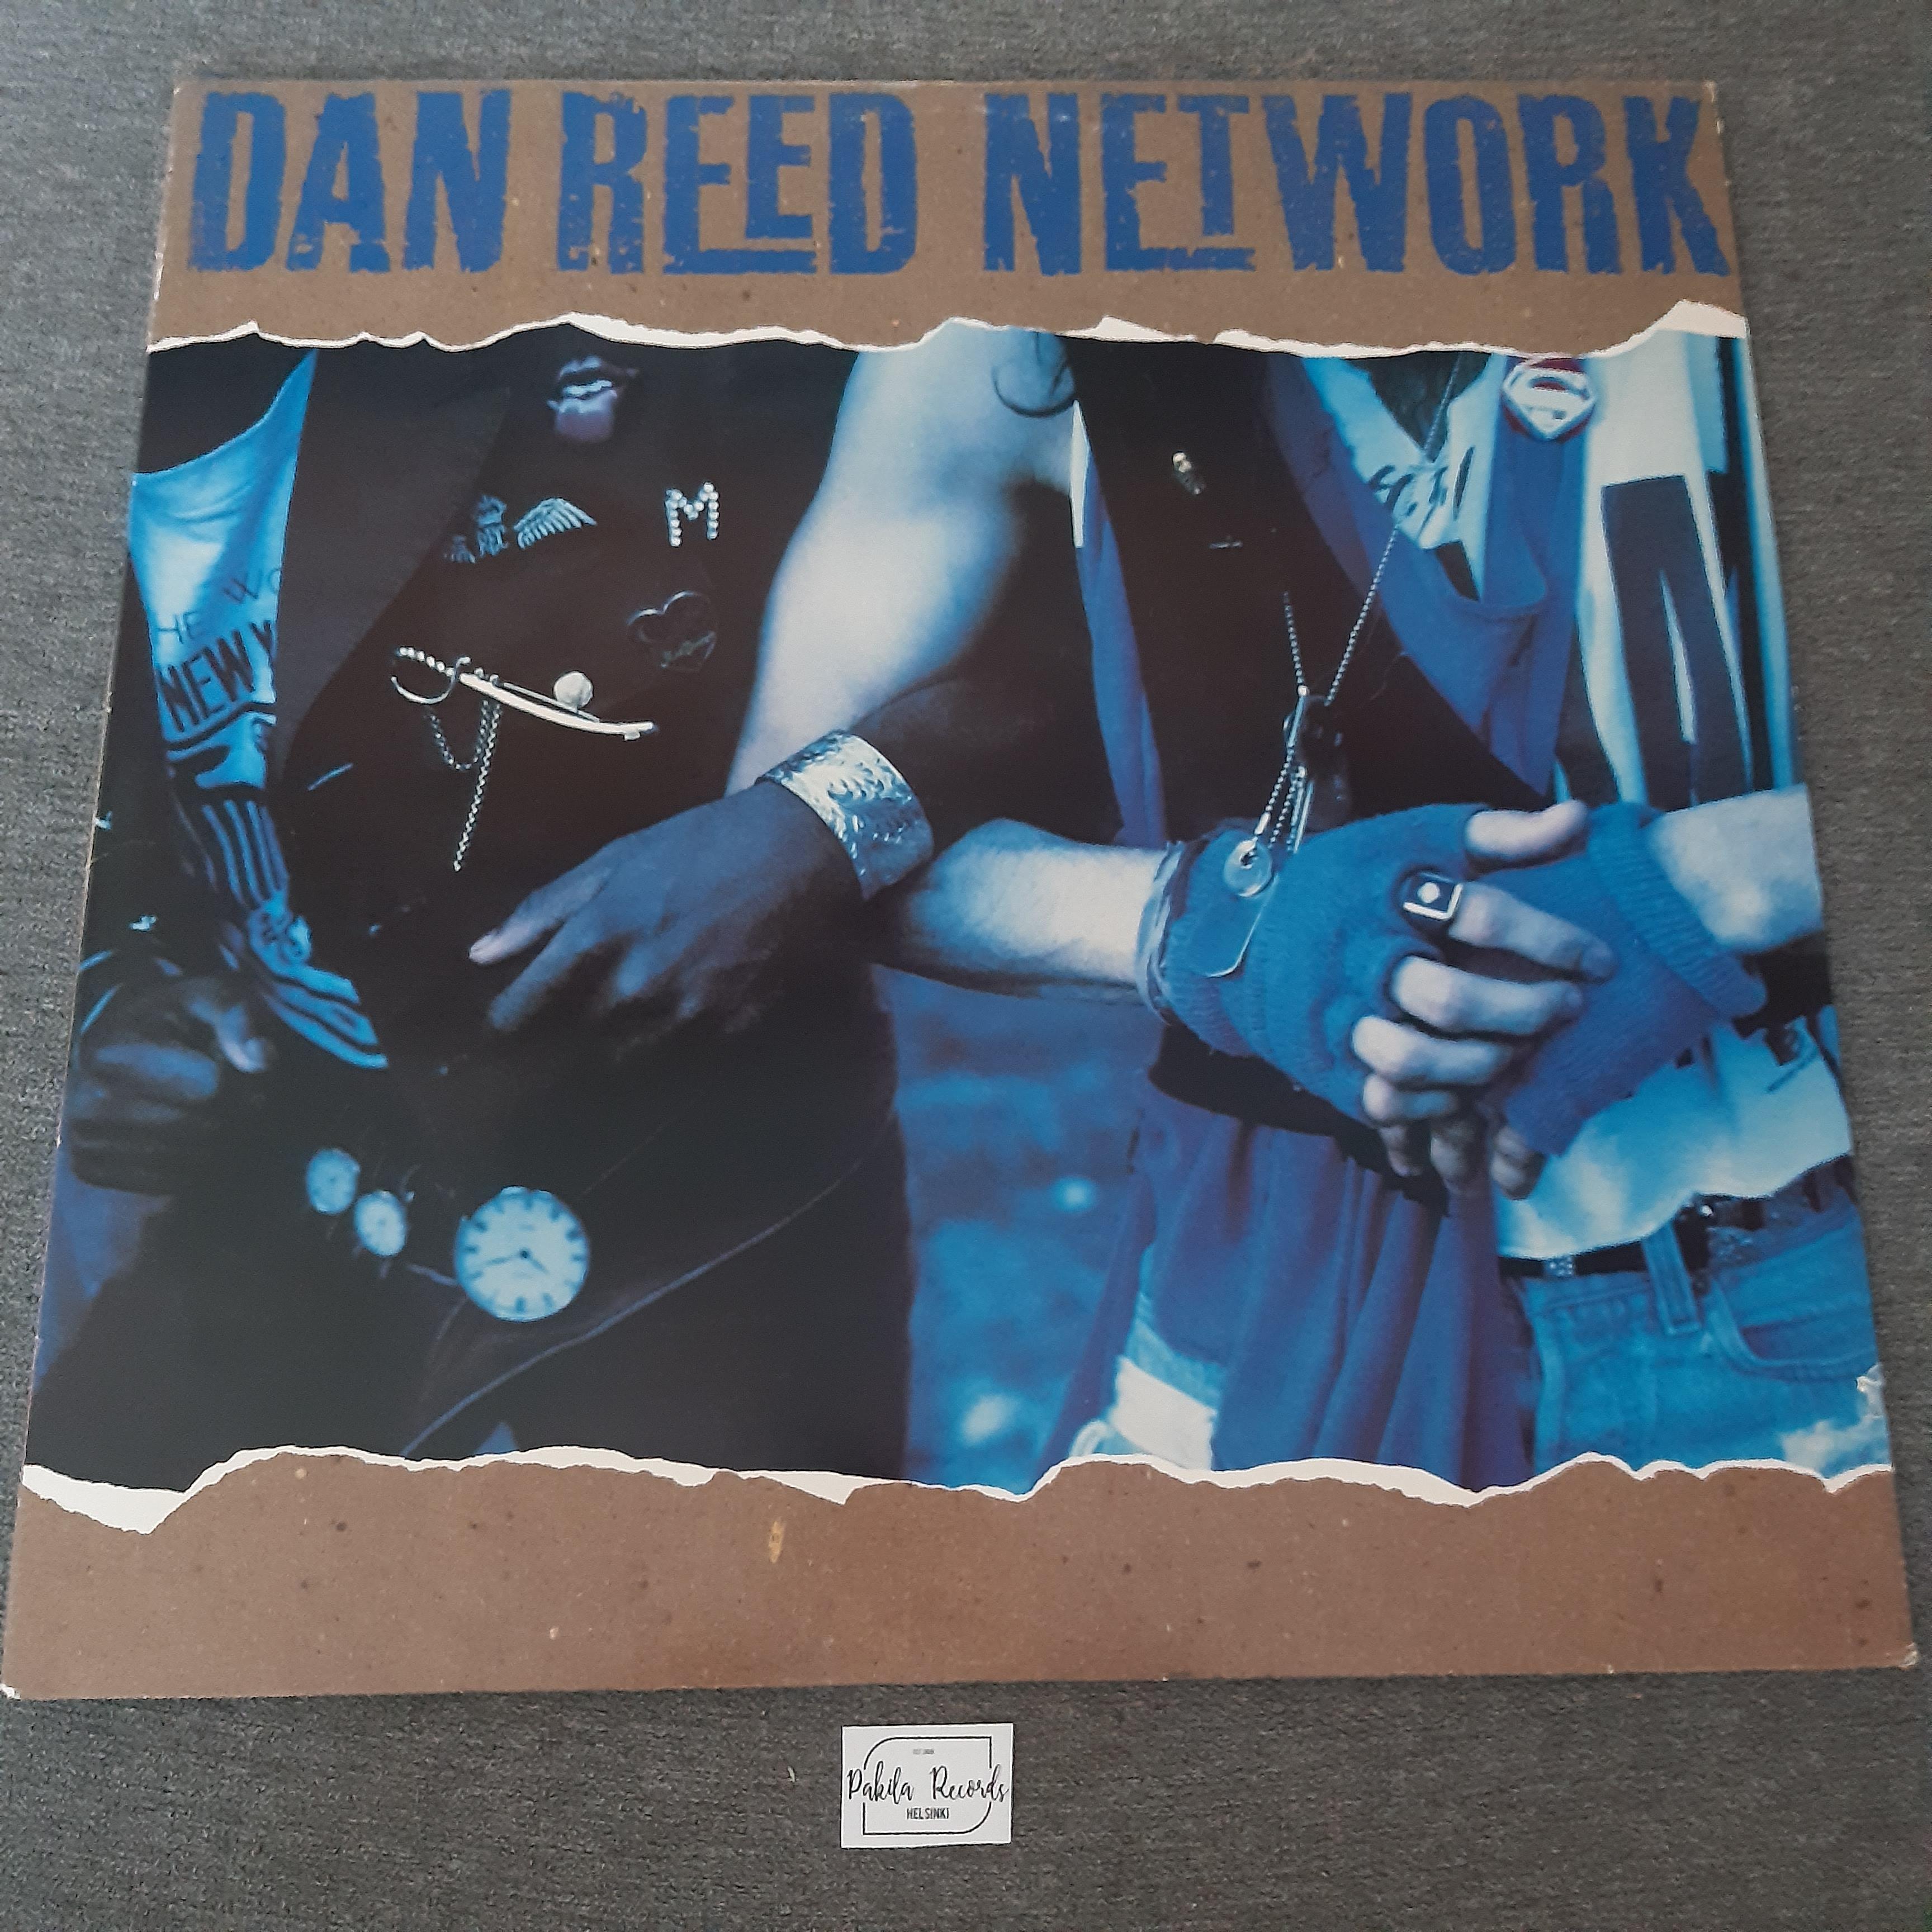 Dan Reed Network - Dan Reed Network - LP (käytetty)